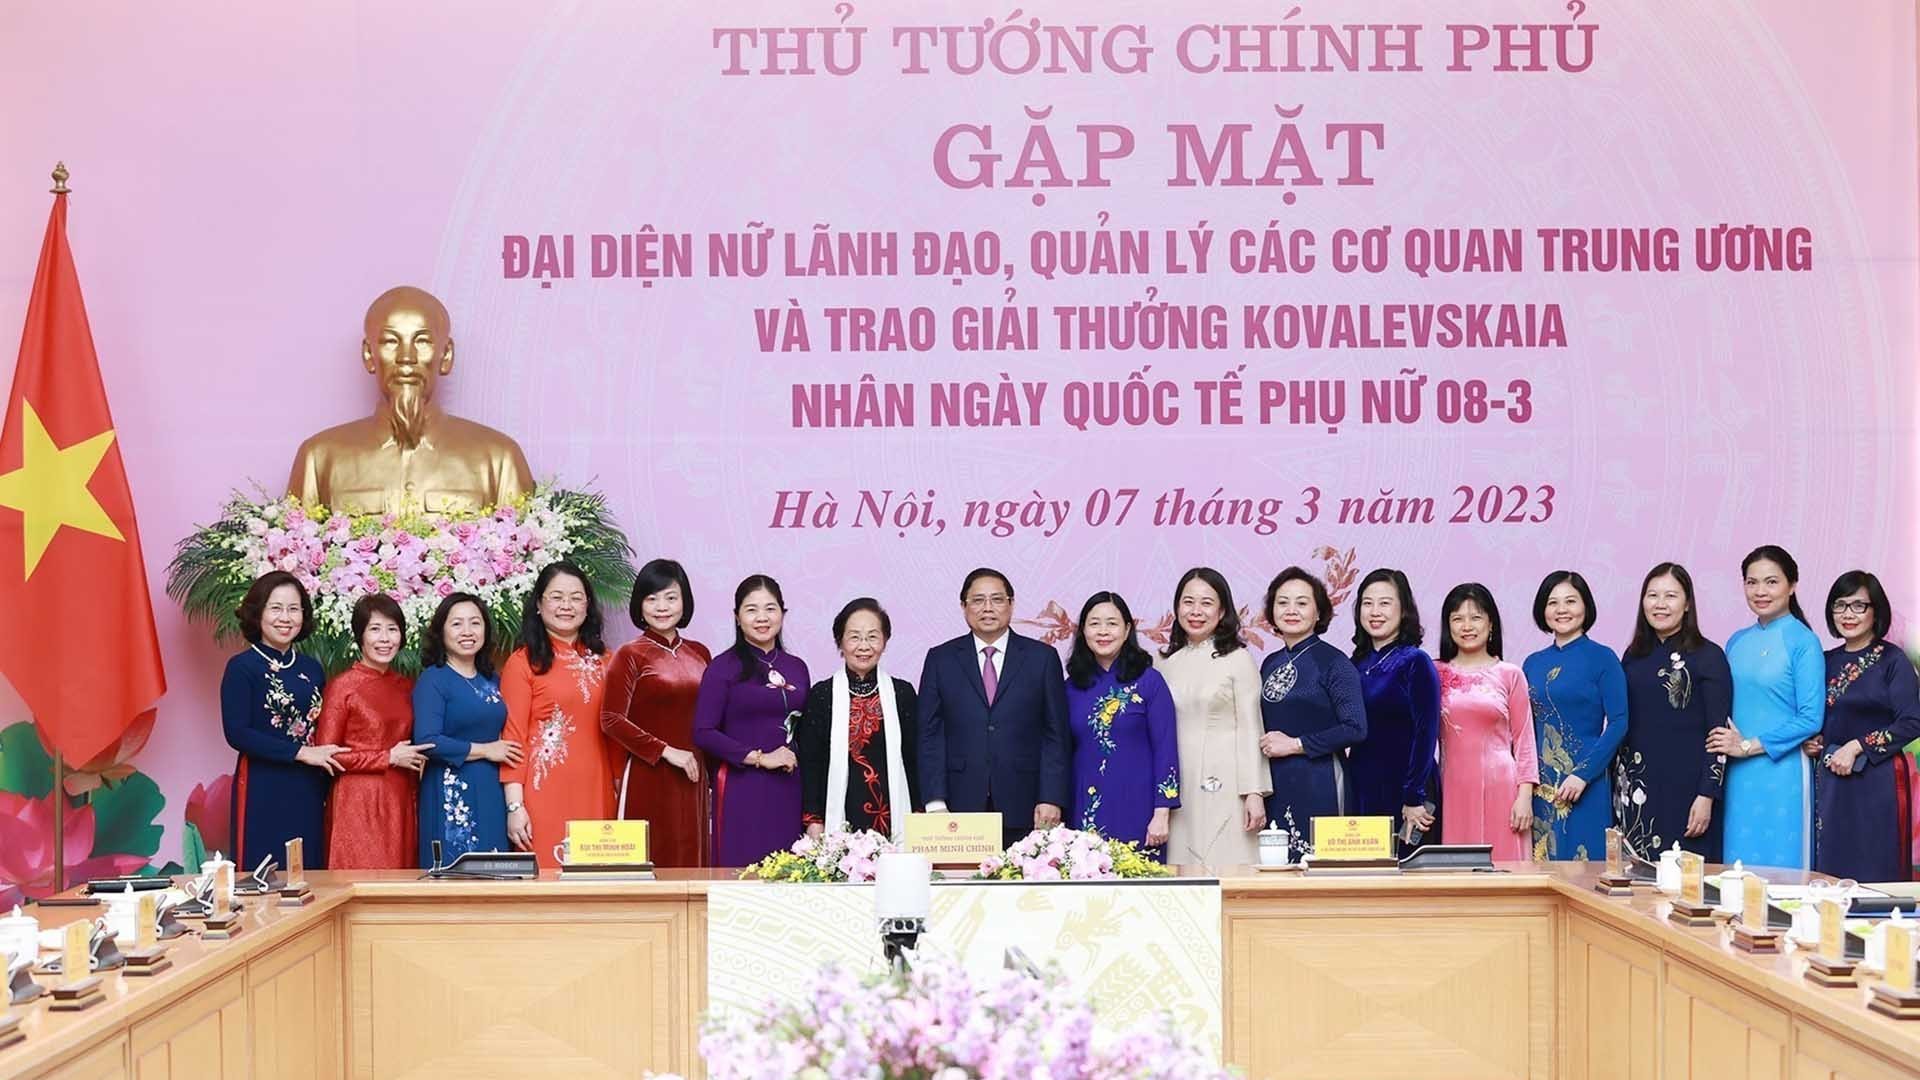 Thủ tướng Phạm Minh Chính gặp mặt đại diện nữ lãnh đạo và trao Giải thưởng Kovalevskaia cho các nhà khoa học nữ